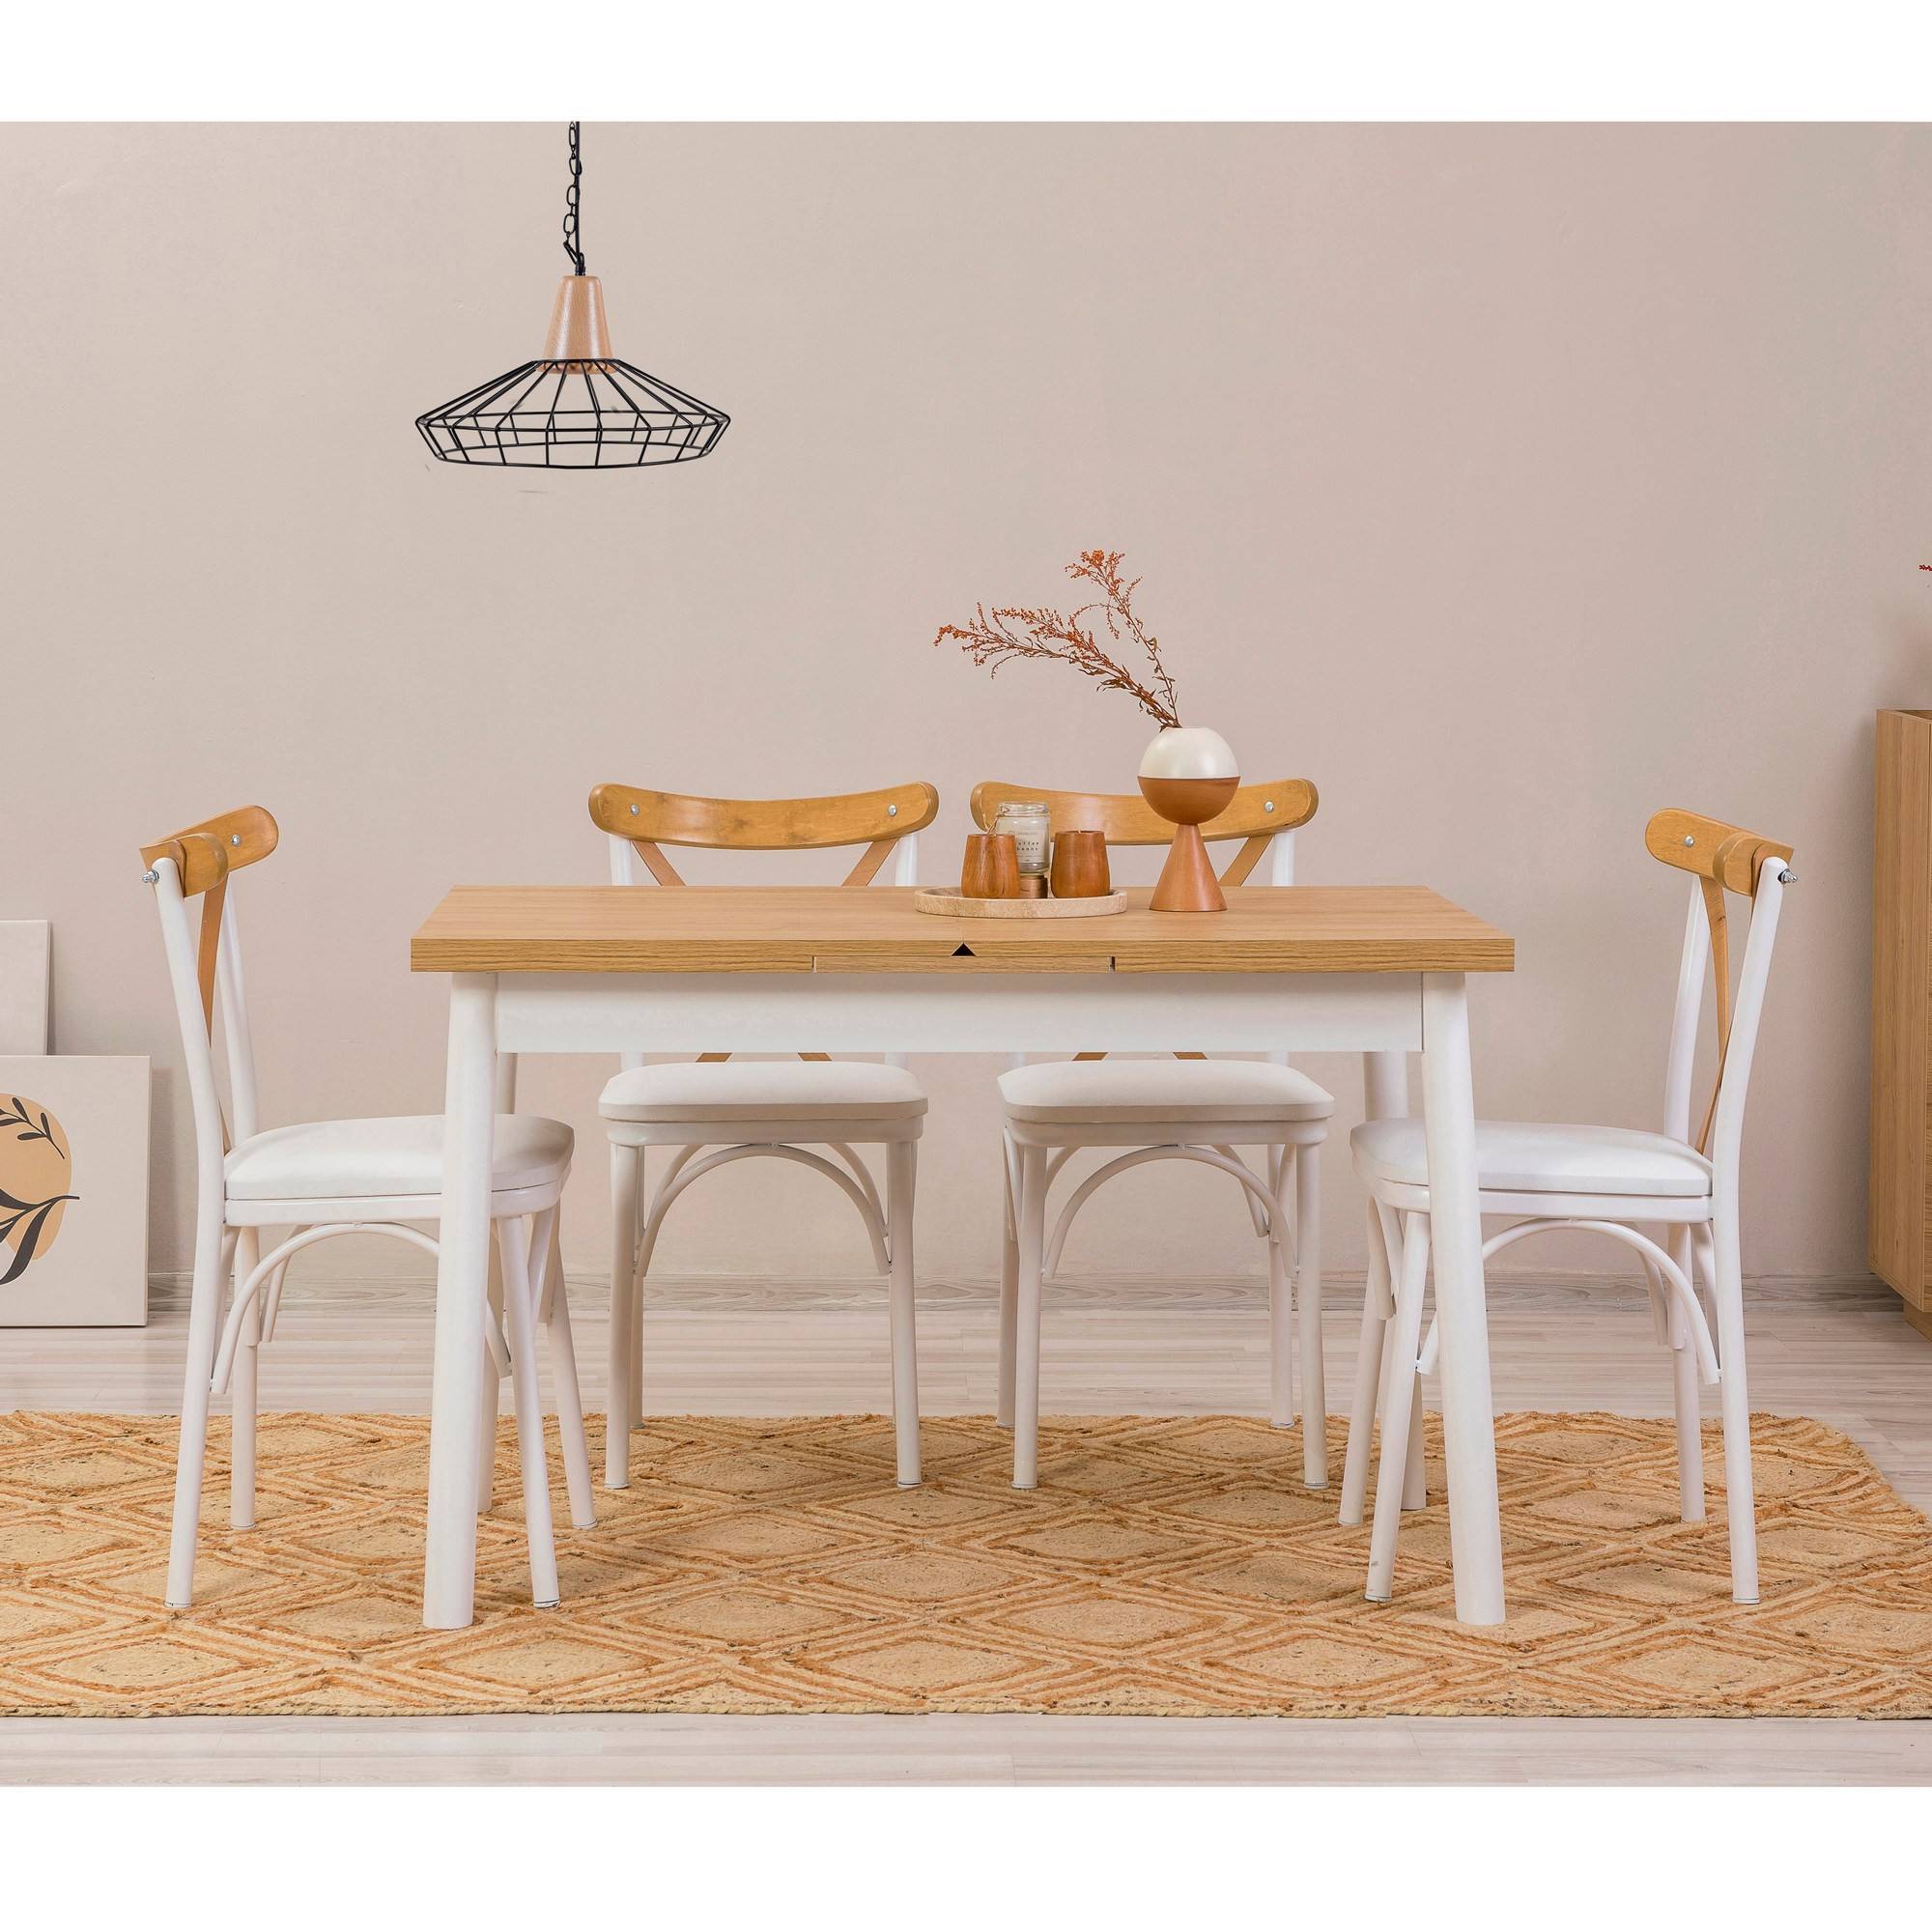 Set di 4 sedie e 1 tavolo allungabile Iridus bianco e legno chiaro